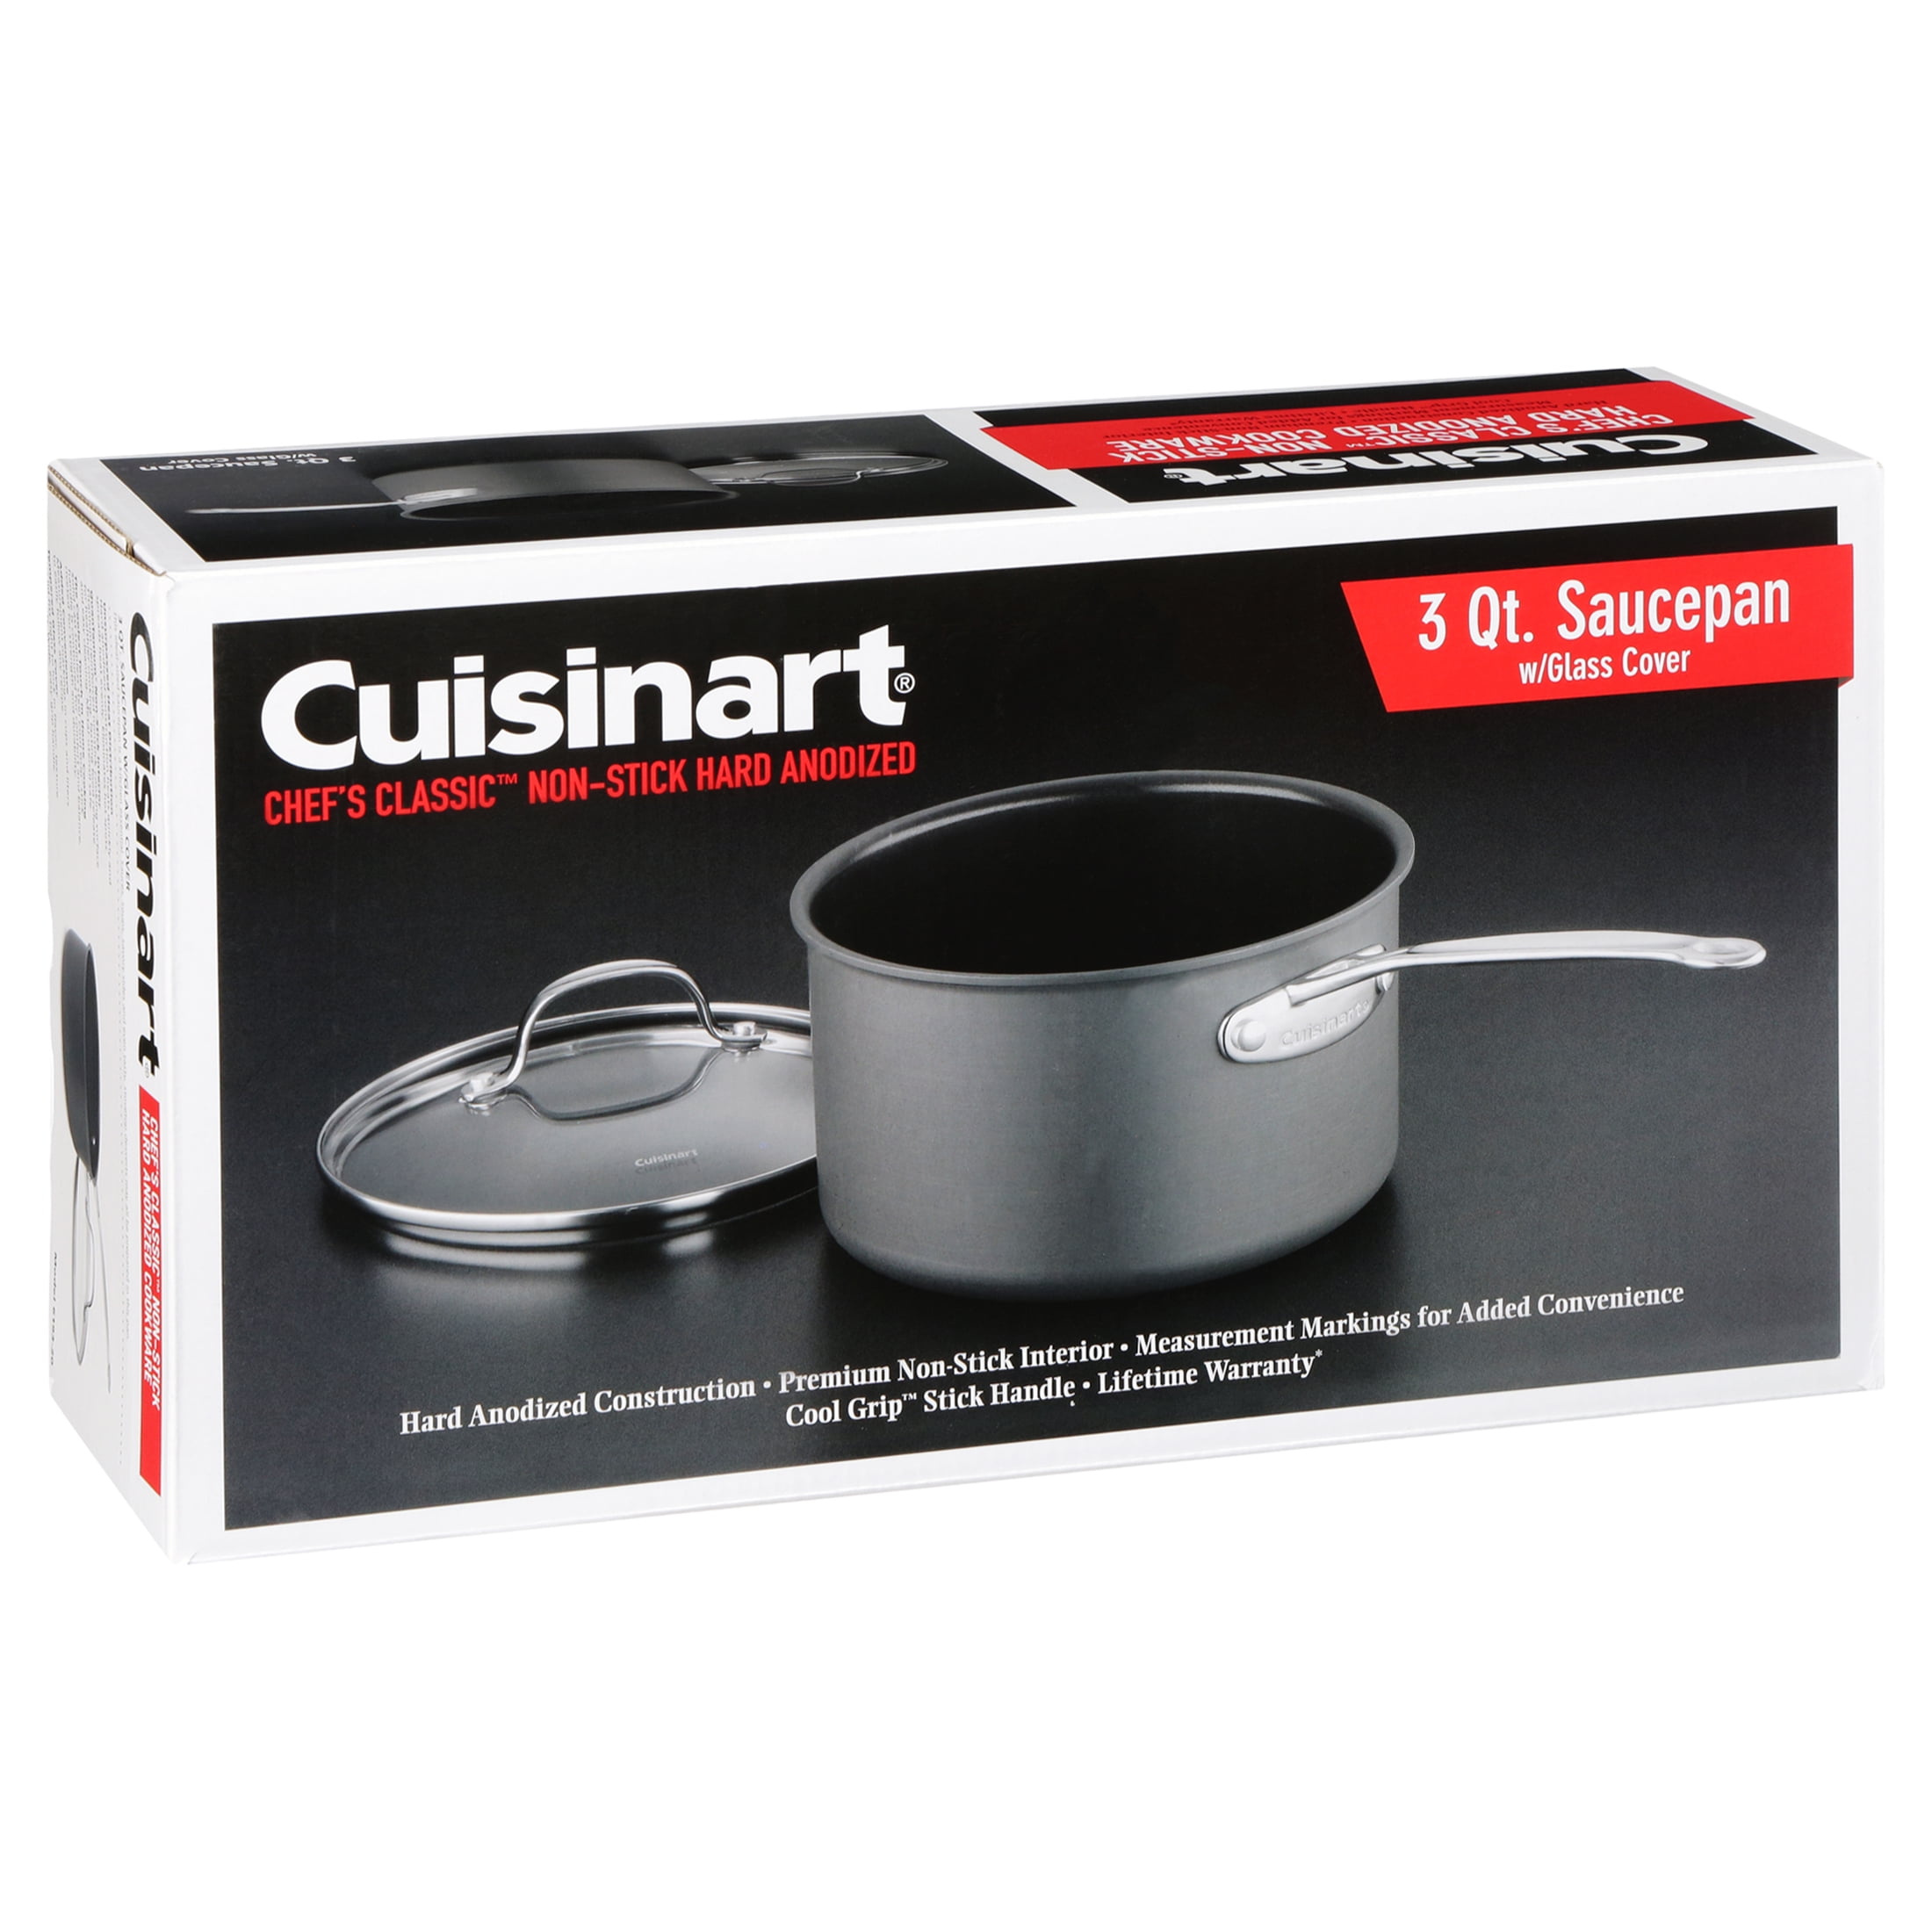 Cuisinart Chef's Classic Non-Stick Hard Anodized 1-1/2 Qt. Saucepan -  9236549